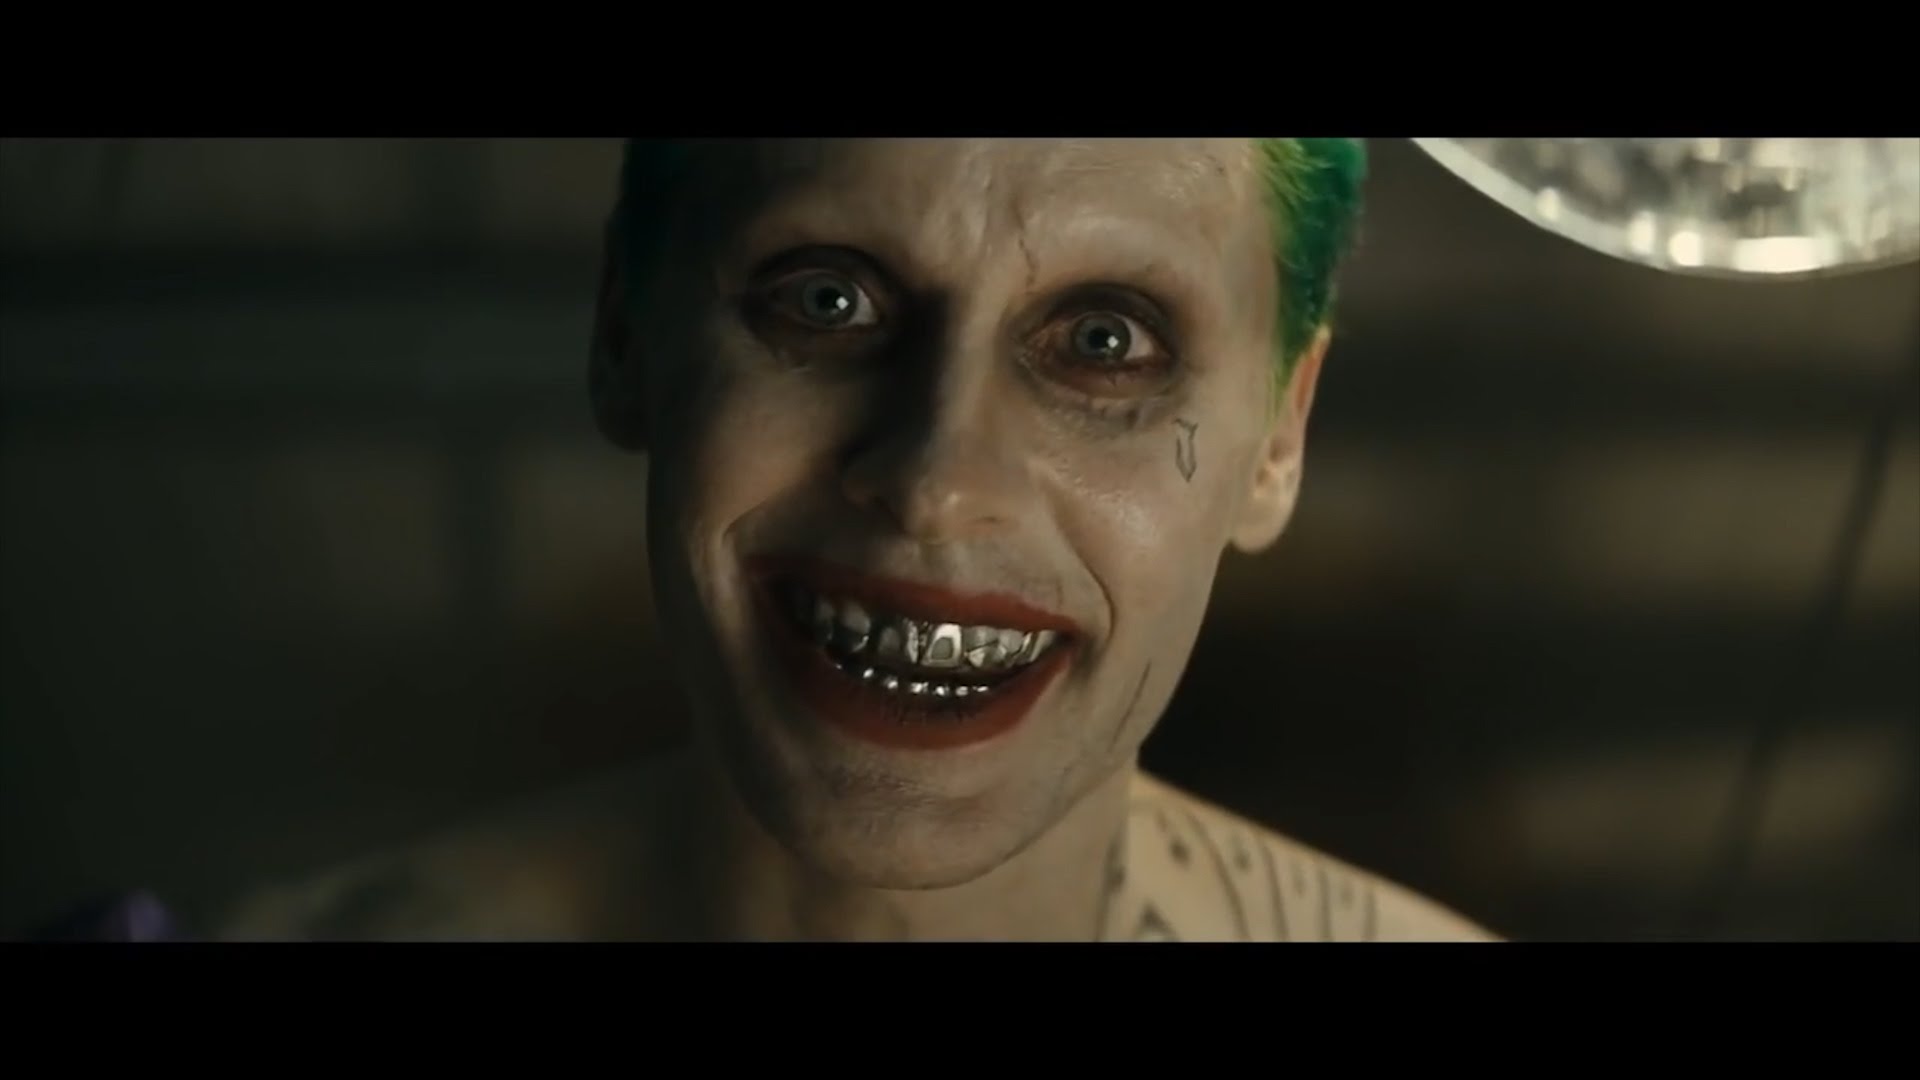 Suicide Squad' Director Regrets Jared Leto's Joker Damaged Tattoo